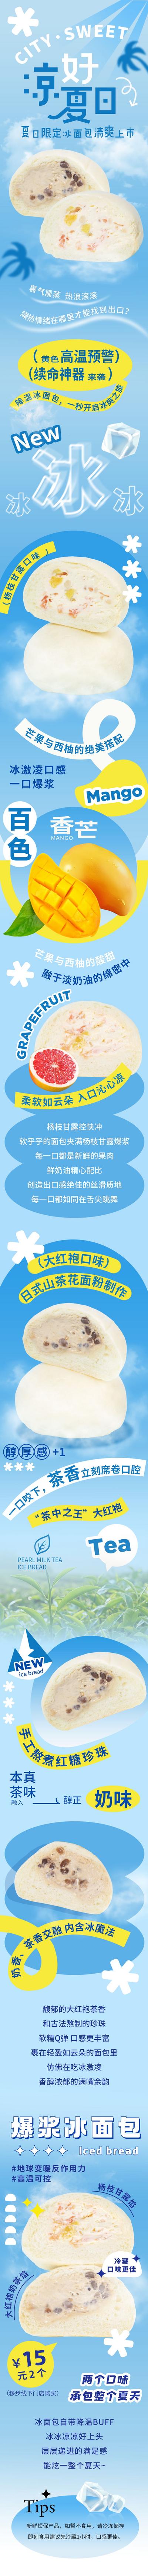 南门网 长图 专题设计 夏季 甜品 冰面包 上新 卡通 蓝色 清凉 夏日 推文